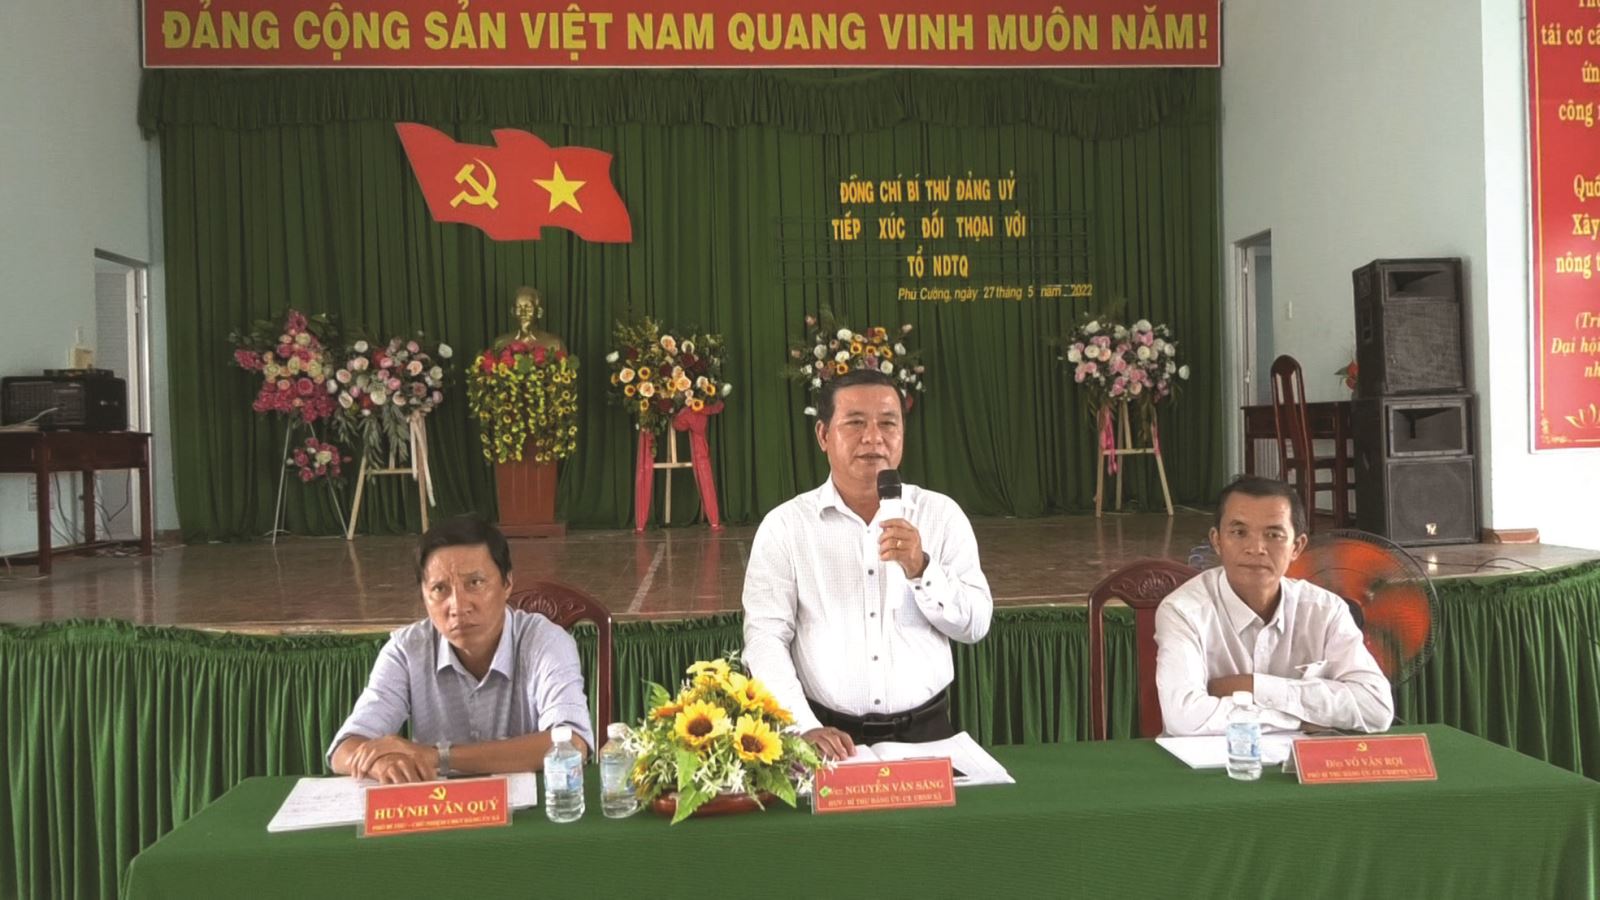 Phú Cường - xã nông thôn mới nâng cao  của tỉnh Đồng Tháp